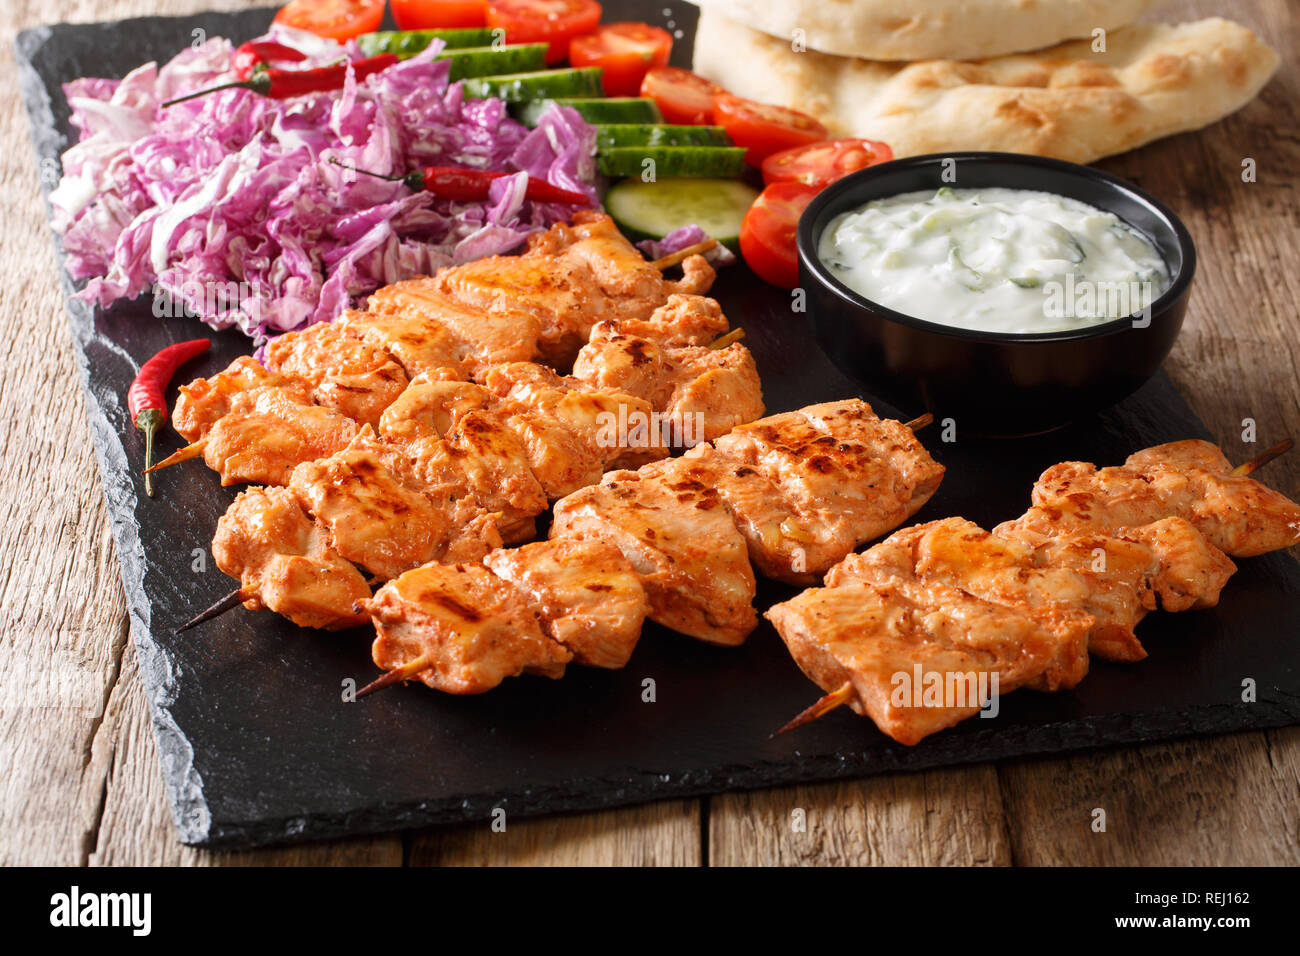 Brochette de poulet méditerranéen avec légumes, sauce yogourt et de pain pita libre sur une liste de sélection. Banque D'Images